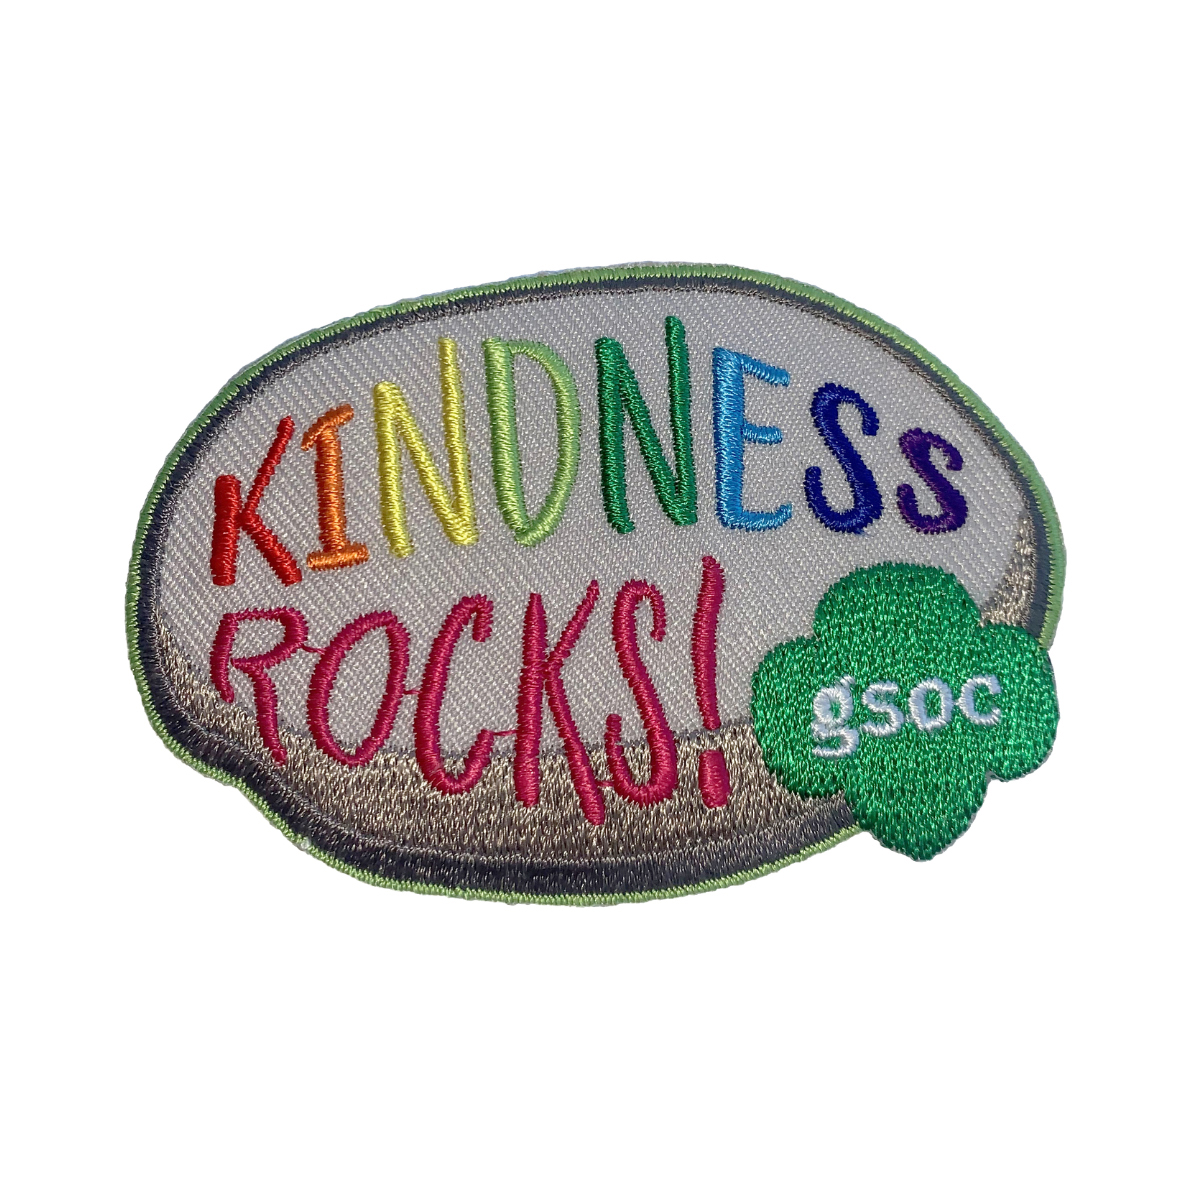 GSOC Kindness Rocks Patch